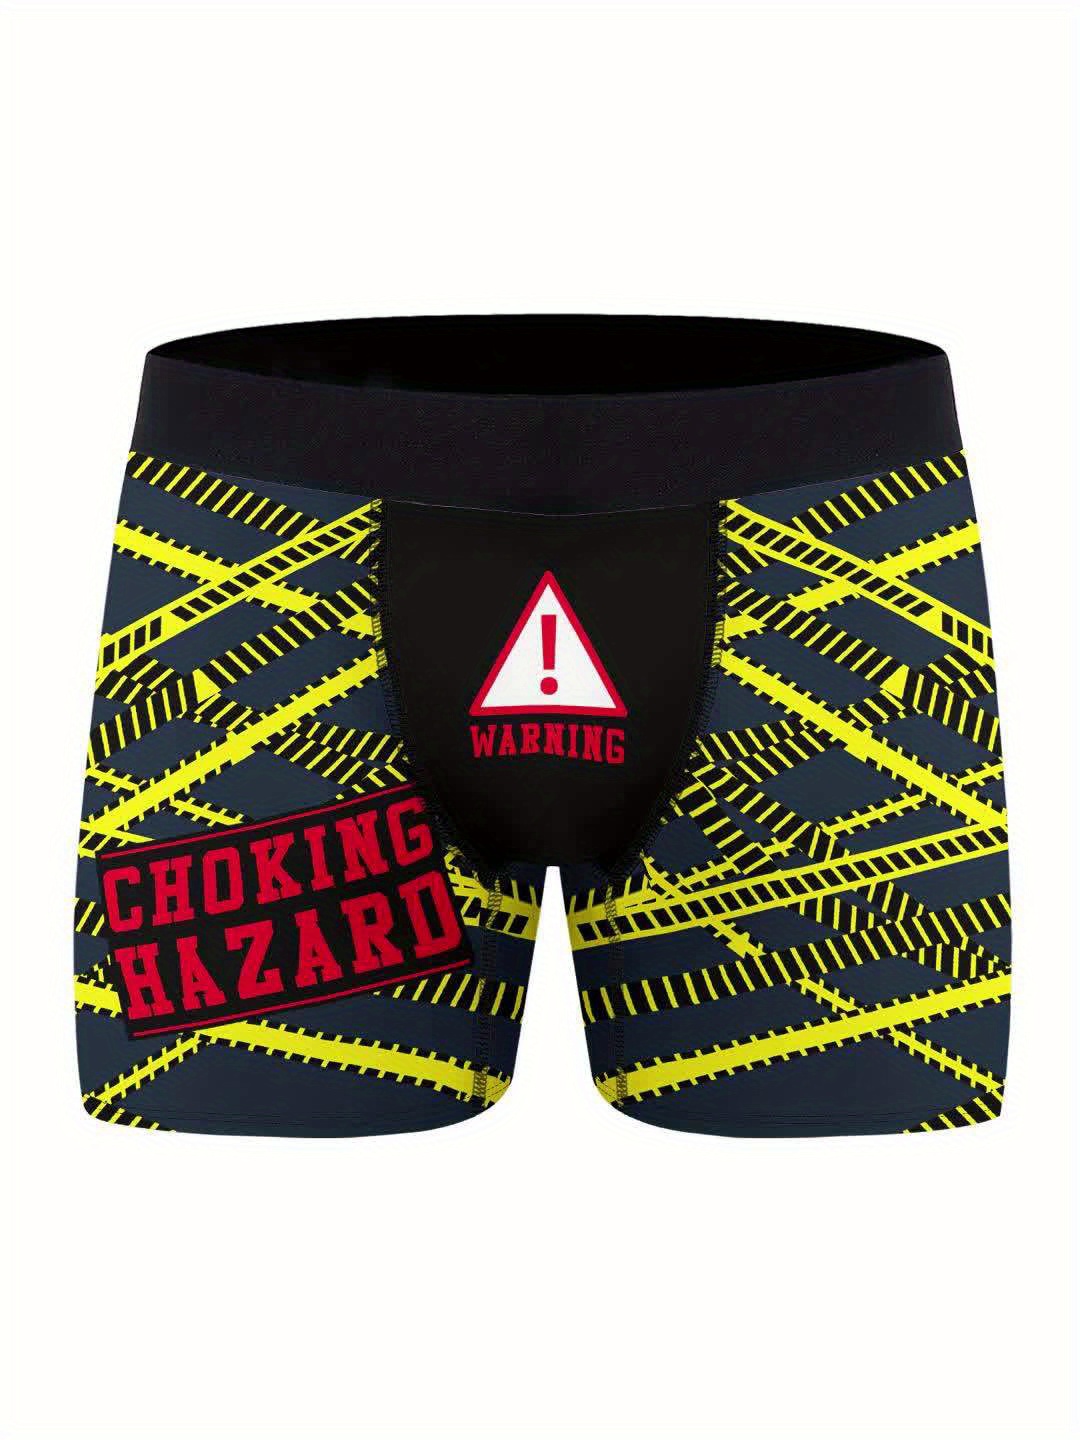 Men's Choking Hazard Warning Print Fashion Novelty Boxer - Temu